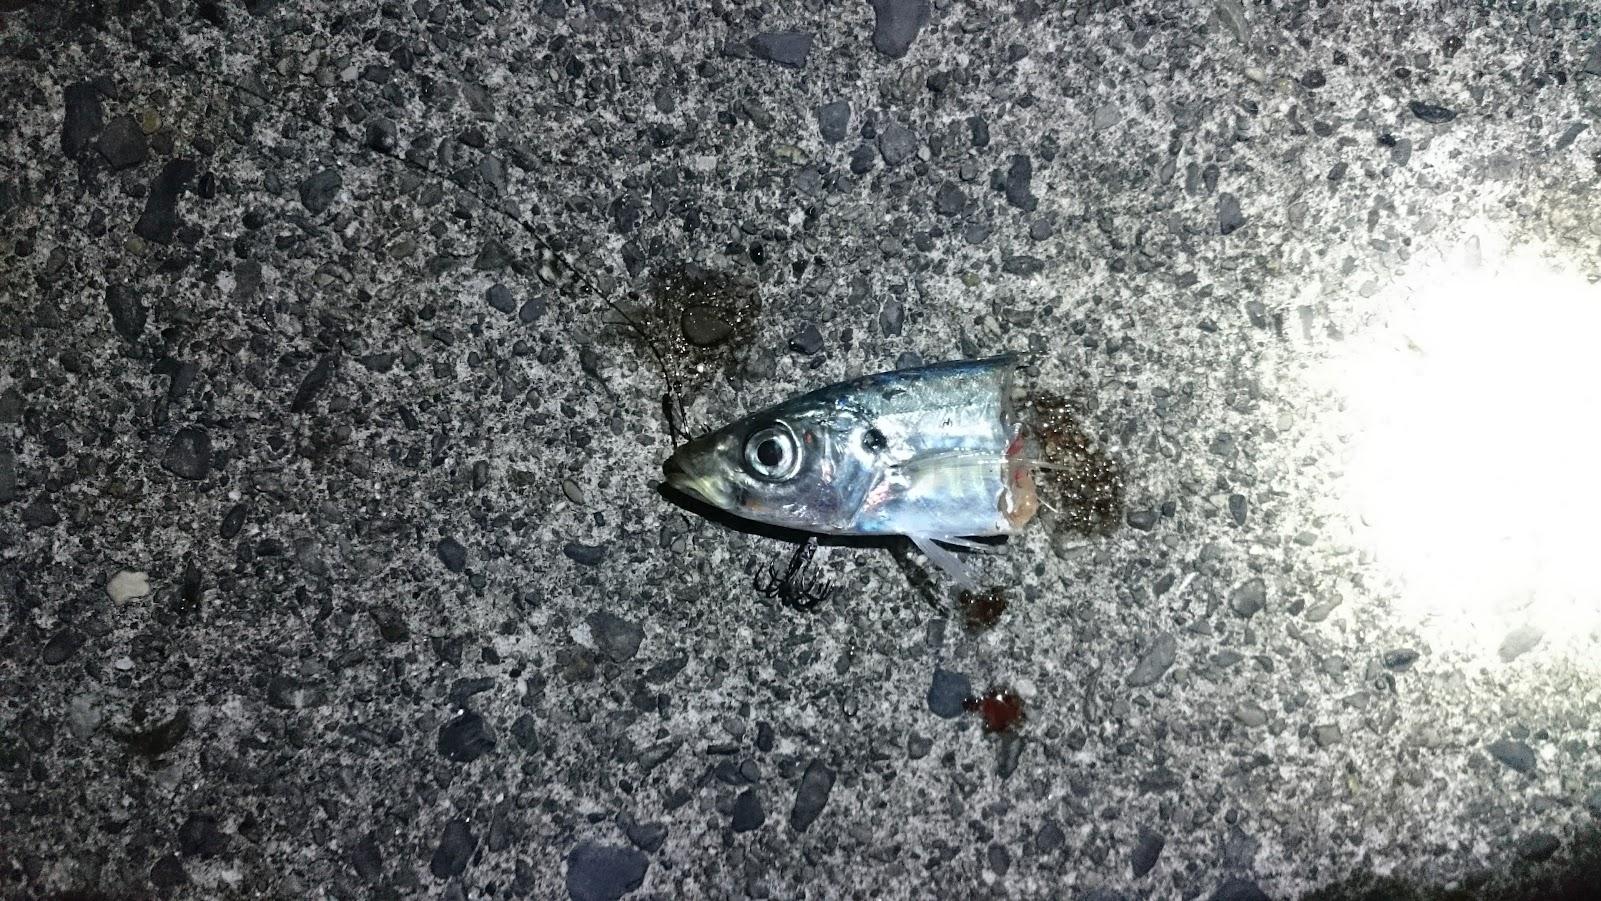 ワイヤー無しの方にも太刀魚が掛かりましたがこちらは食い逃げされました。
アオリイカの気配はなく、足元まで太刀魚が居るのでワイヤー仕掛けは必須な感じです。